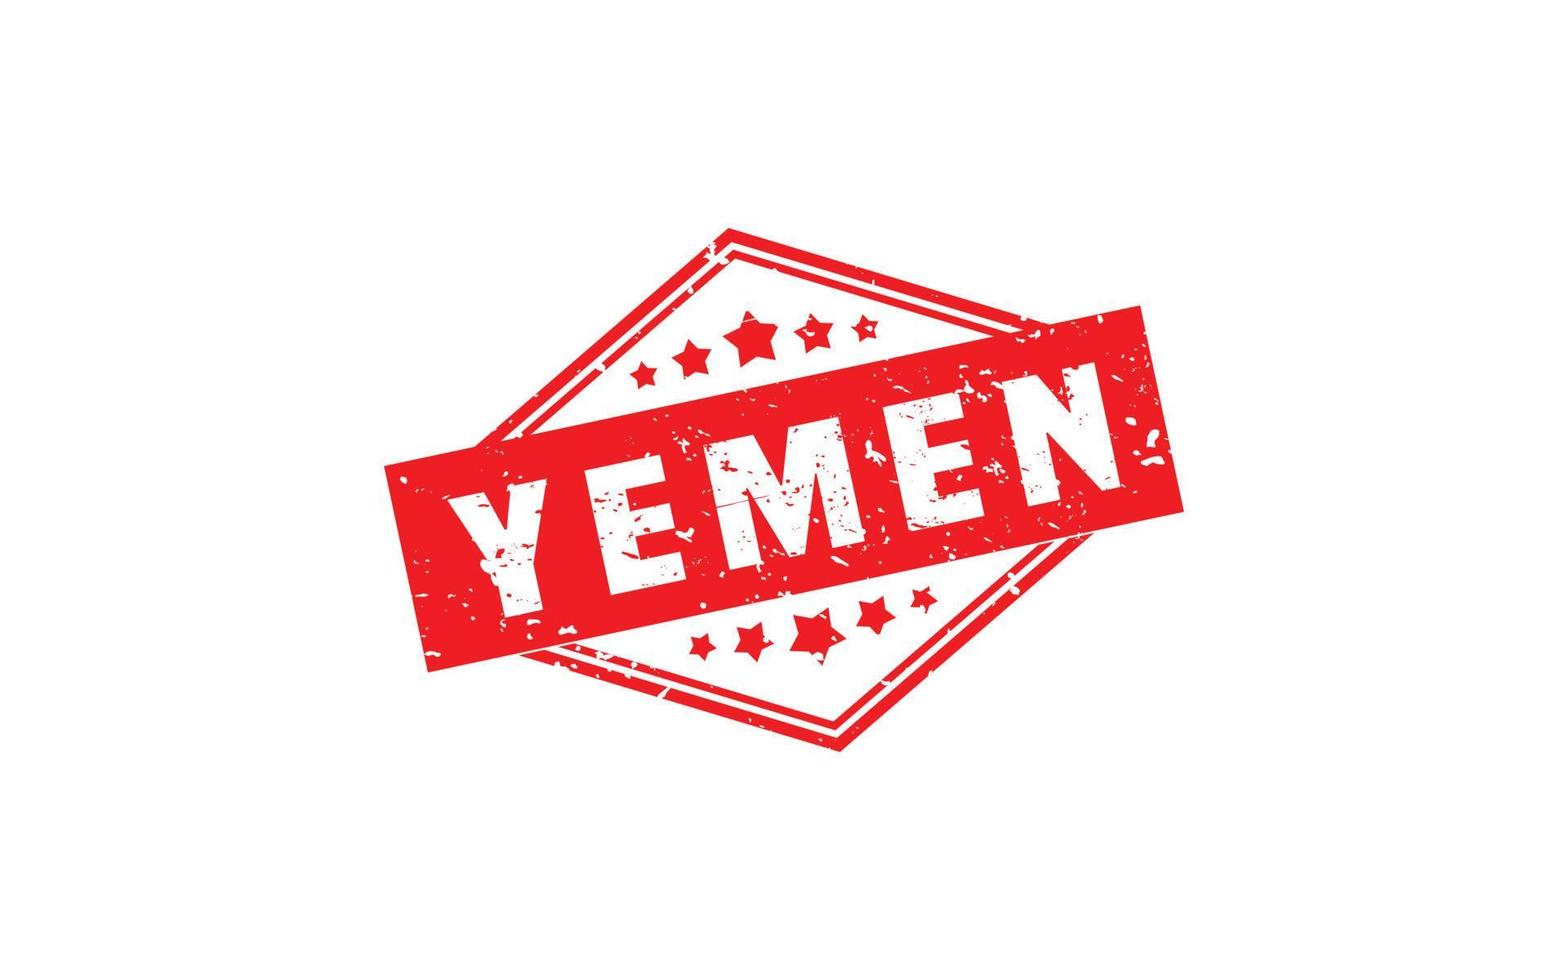 Jemen postzegel rubber met grunge stijl Aan wit achtergrond vector